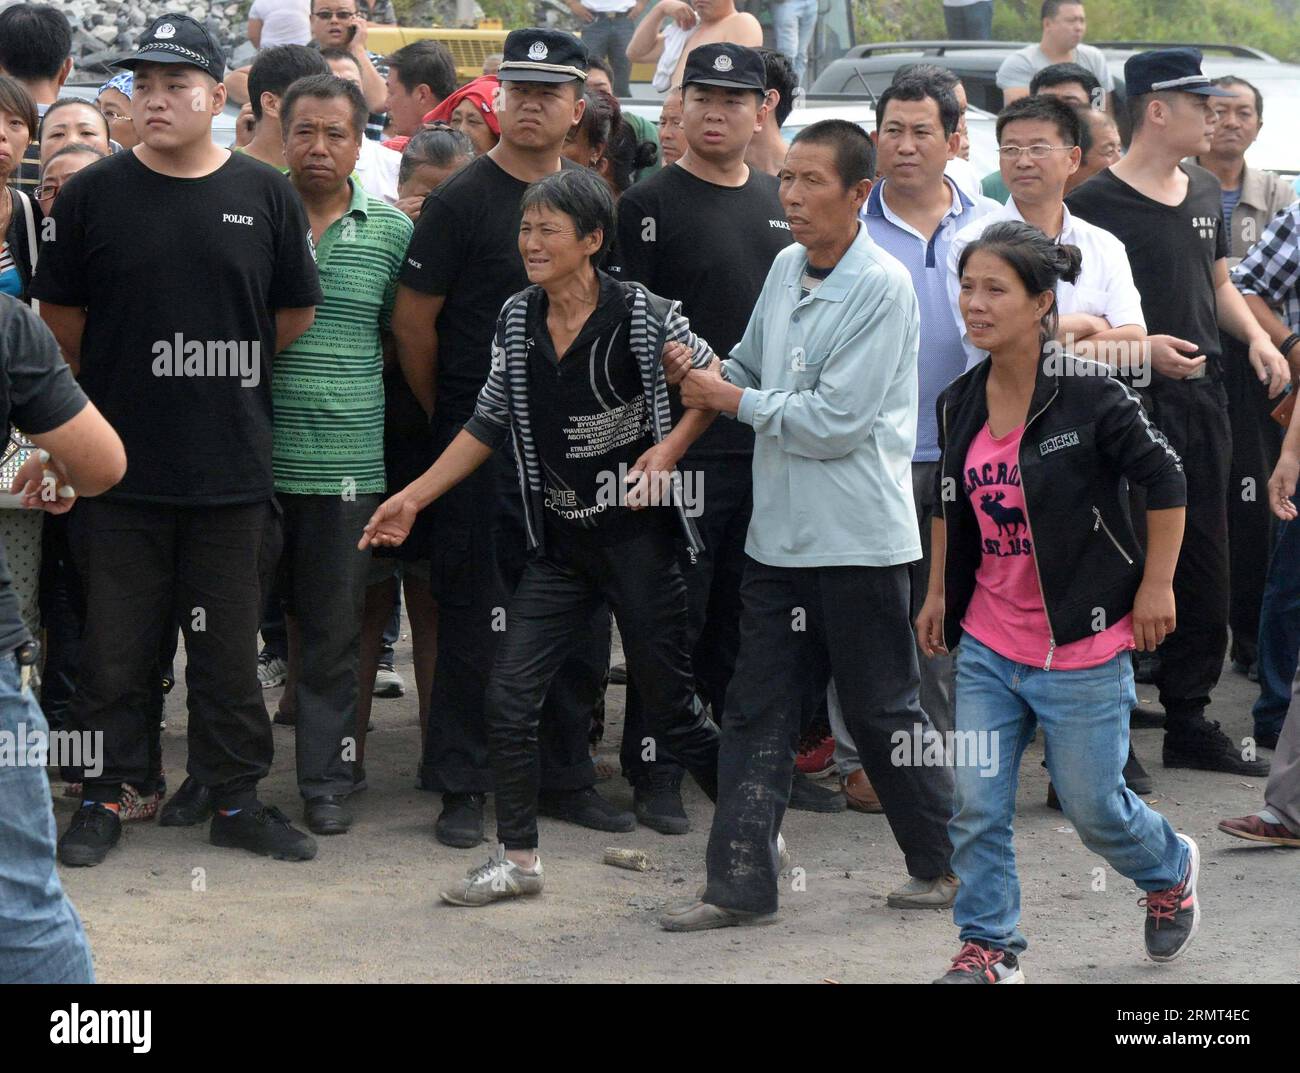 (140815) -- JIXI, 15 agosto 2014 -- i parenti dei minatori intrappolati sono ansiosi di vedere le persone salvate fuori da una miniera di carbone alluvionata della miniera di carbone privata di Anzhishun a Jixi, nella provincia di Heilongjiang nella Cina nordorientale, 15 agosto 2014. Nove persone sono state salvate e 16 sono rimaste intrappolate nella miniera di carbone allagata. (lfj) CHINA-HEILONGJIANG-JIXI-ALLAGATA CARBONE MINE-RESCUE (CN) WangxKai PUBLICATIONxNOTxINxCHN Jixi 15 agosto 2014 i parenti di minatori intrappolati sono ansiosi di incontrare celebrità del lago salvate fuori da una miniera di carbone inondata della miniera di carbone di proprietà nel Jixi nella provincia di Heilongjiang nel nord-est della Cina, 15 agosto 2014 nove Foto Stock